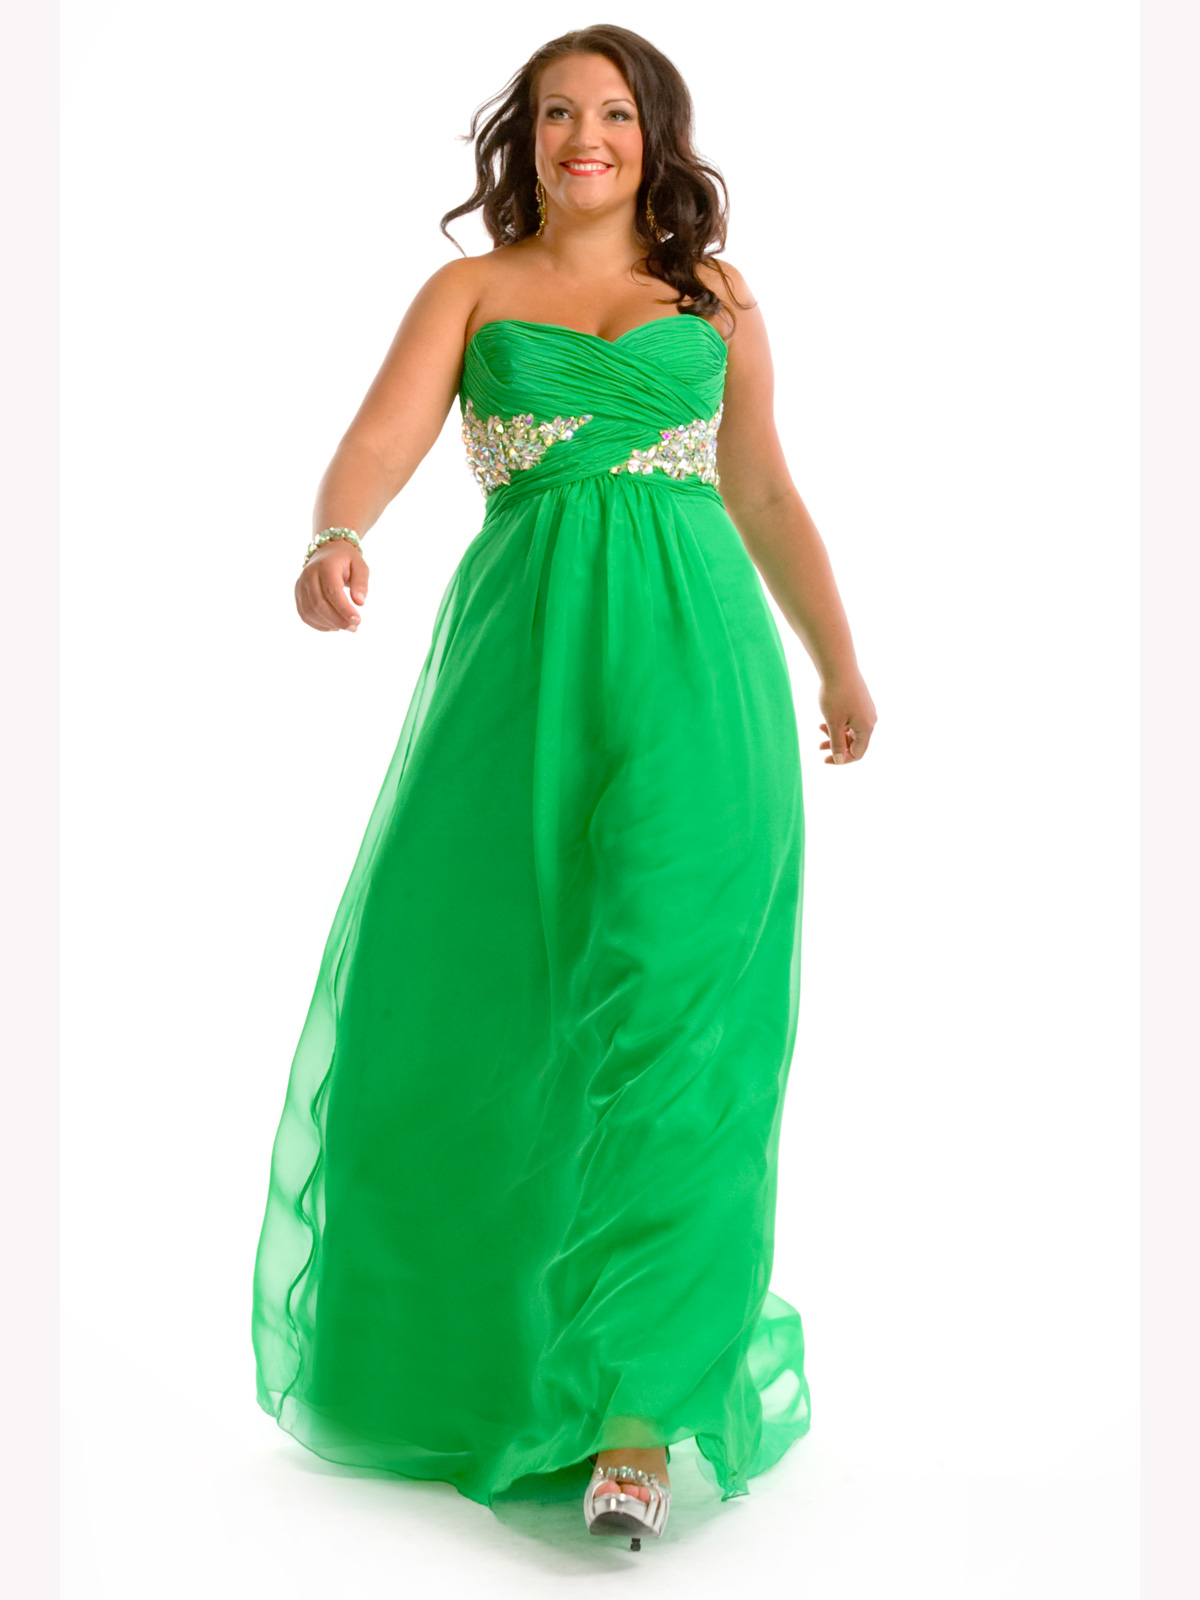 sukienka-na-slub-cywilny-puszysta-zielona.jpg